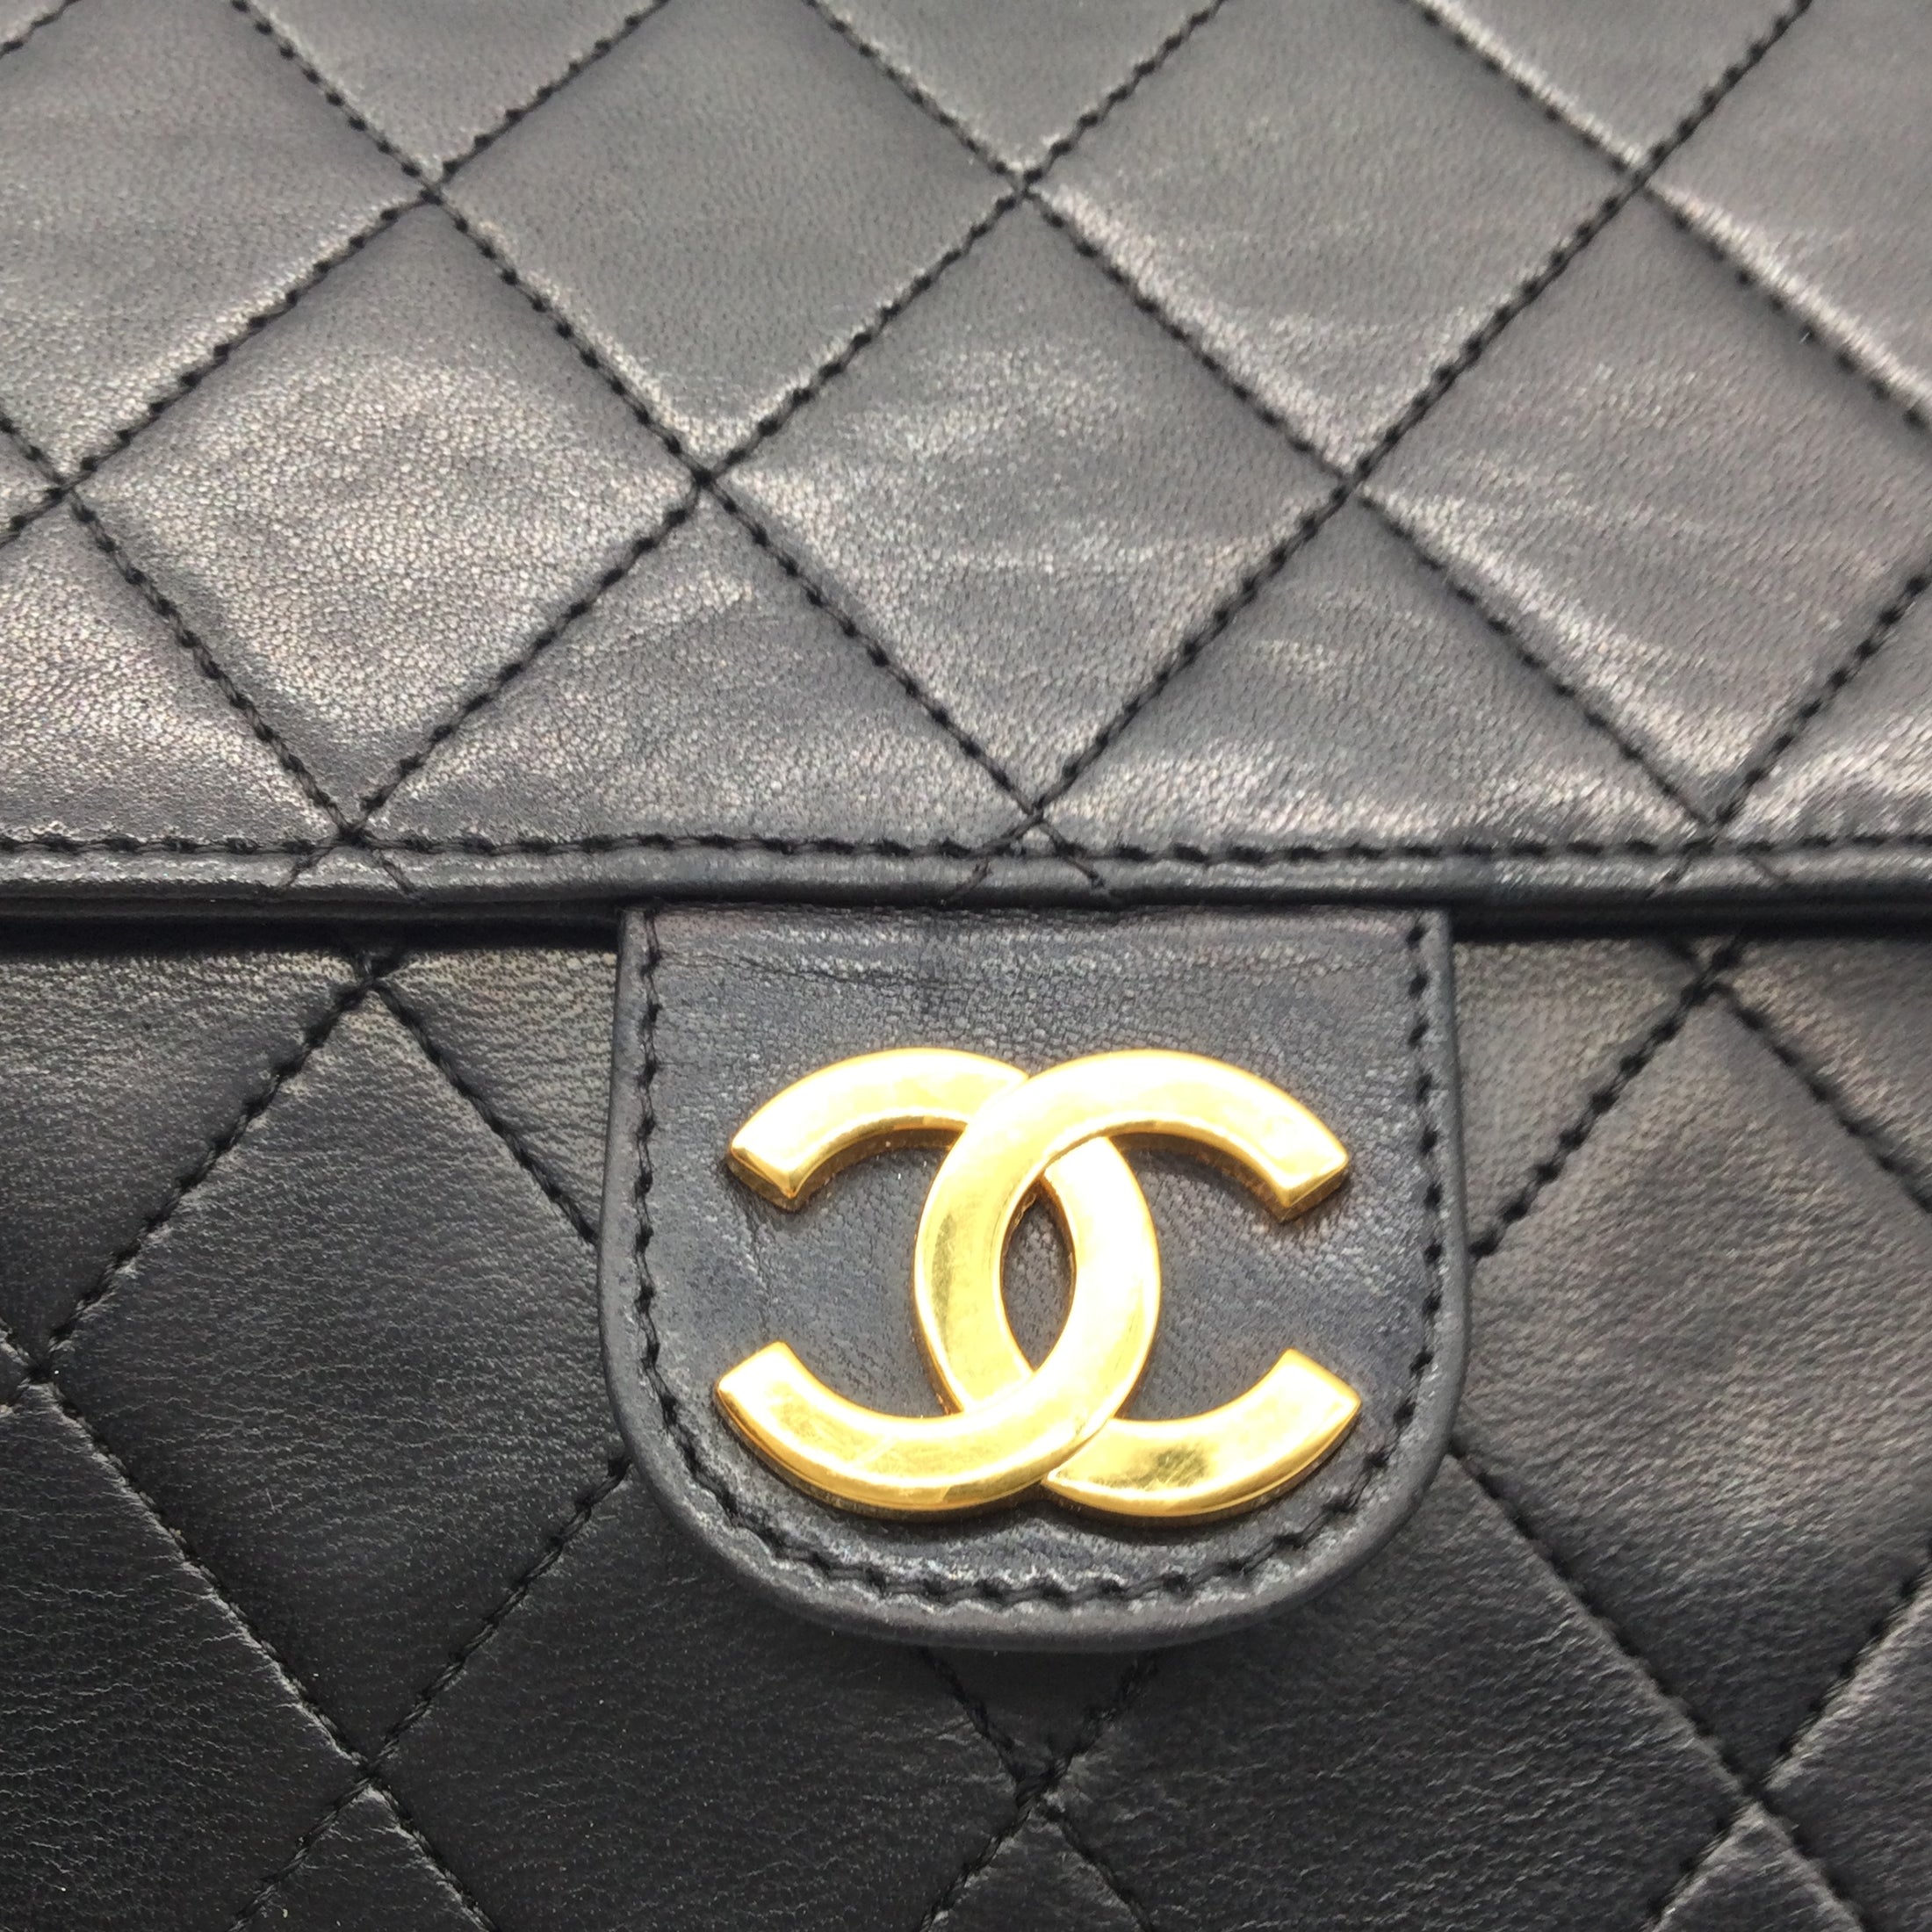 Chanel Classic Vintage Flap Black Lambskin Leather Shoulder Bag